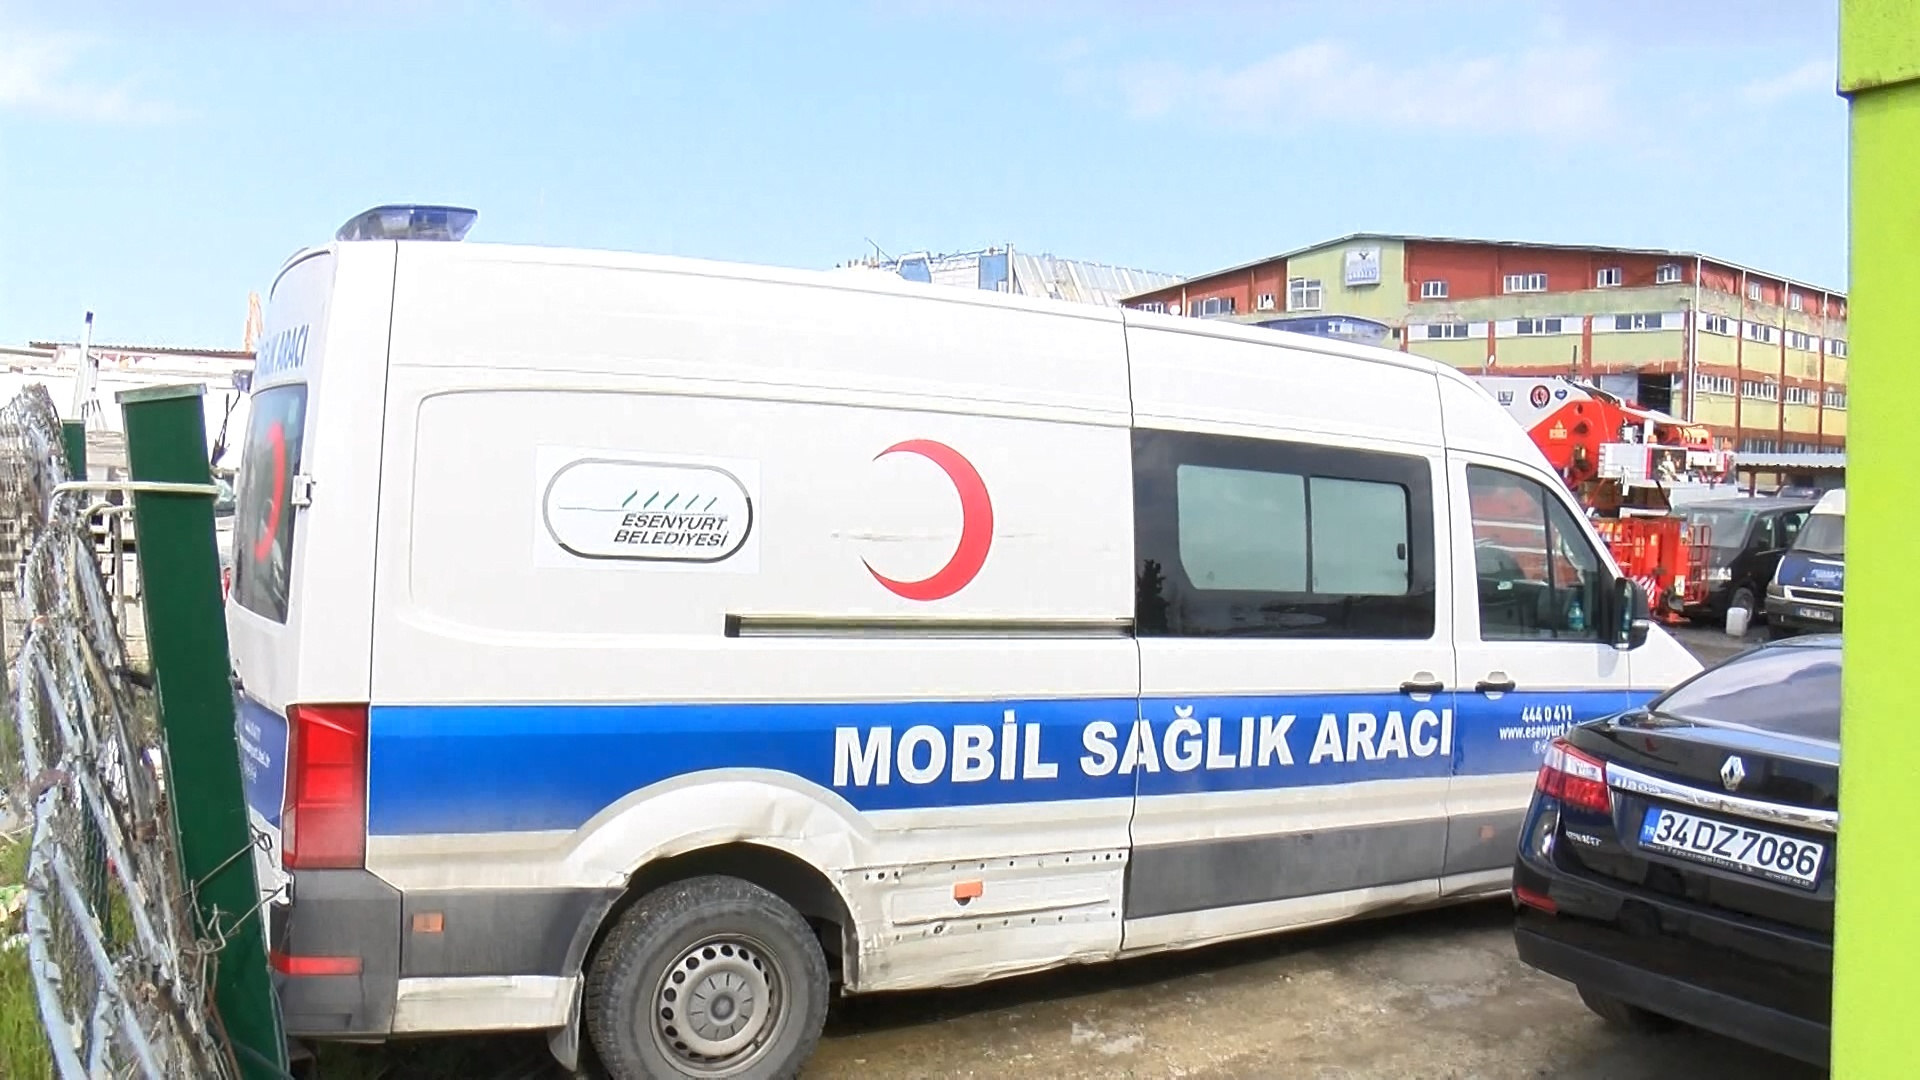 AKP’nin borcu Esenyurt Belediyesi’nin hasta nakil aracını haczettirdi